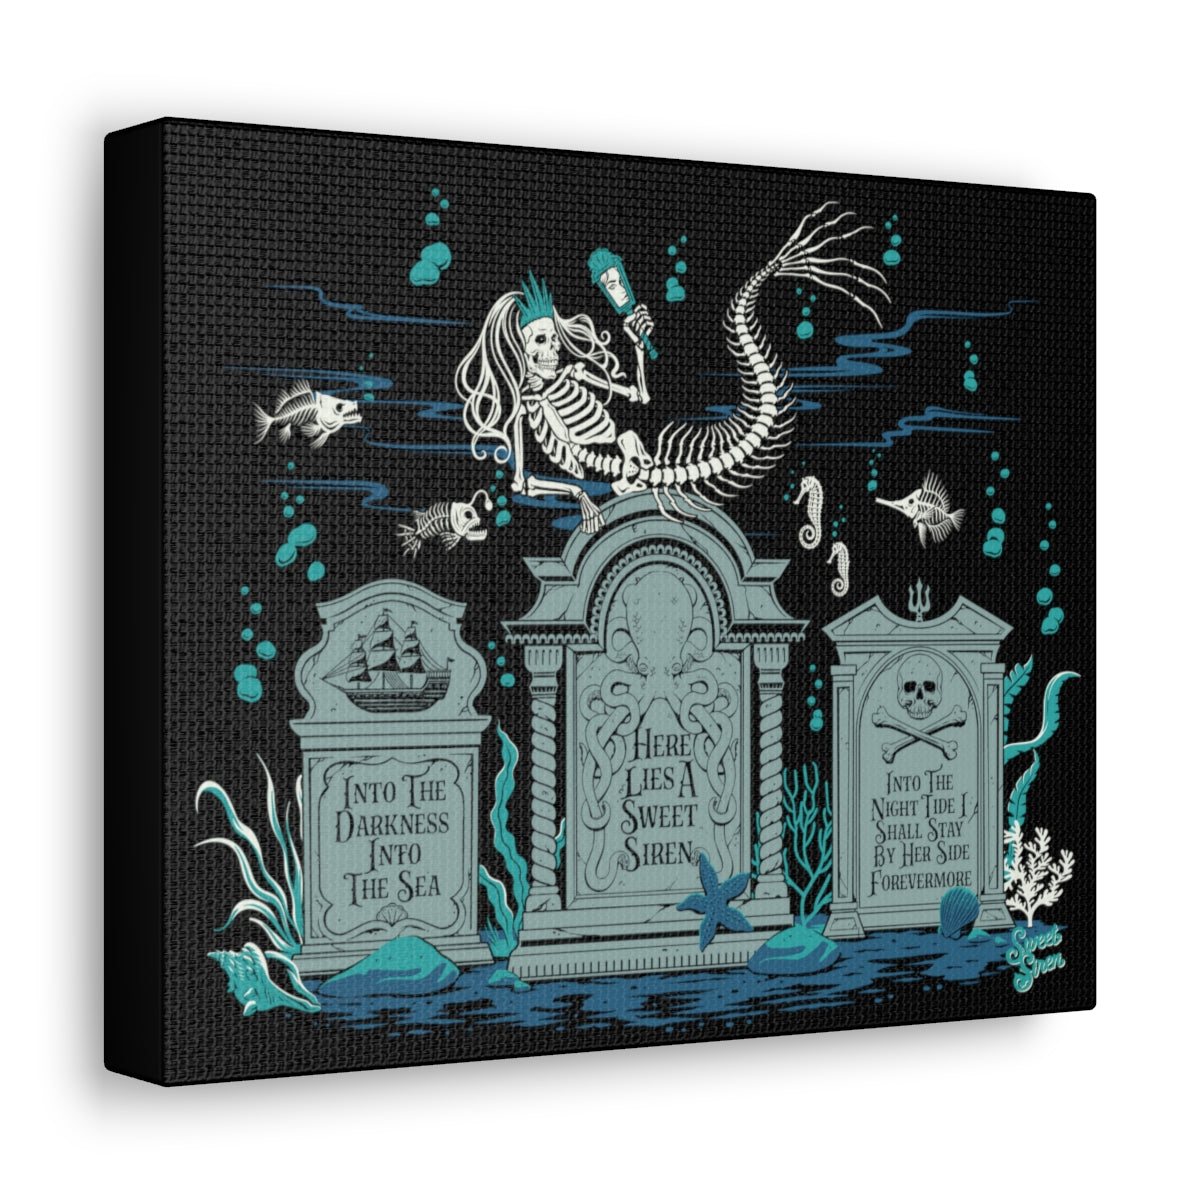 Skeleton Mermaid Graveyard - Canvas Print